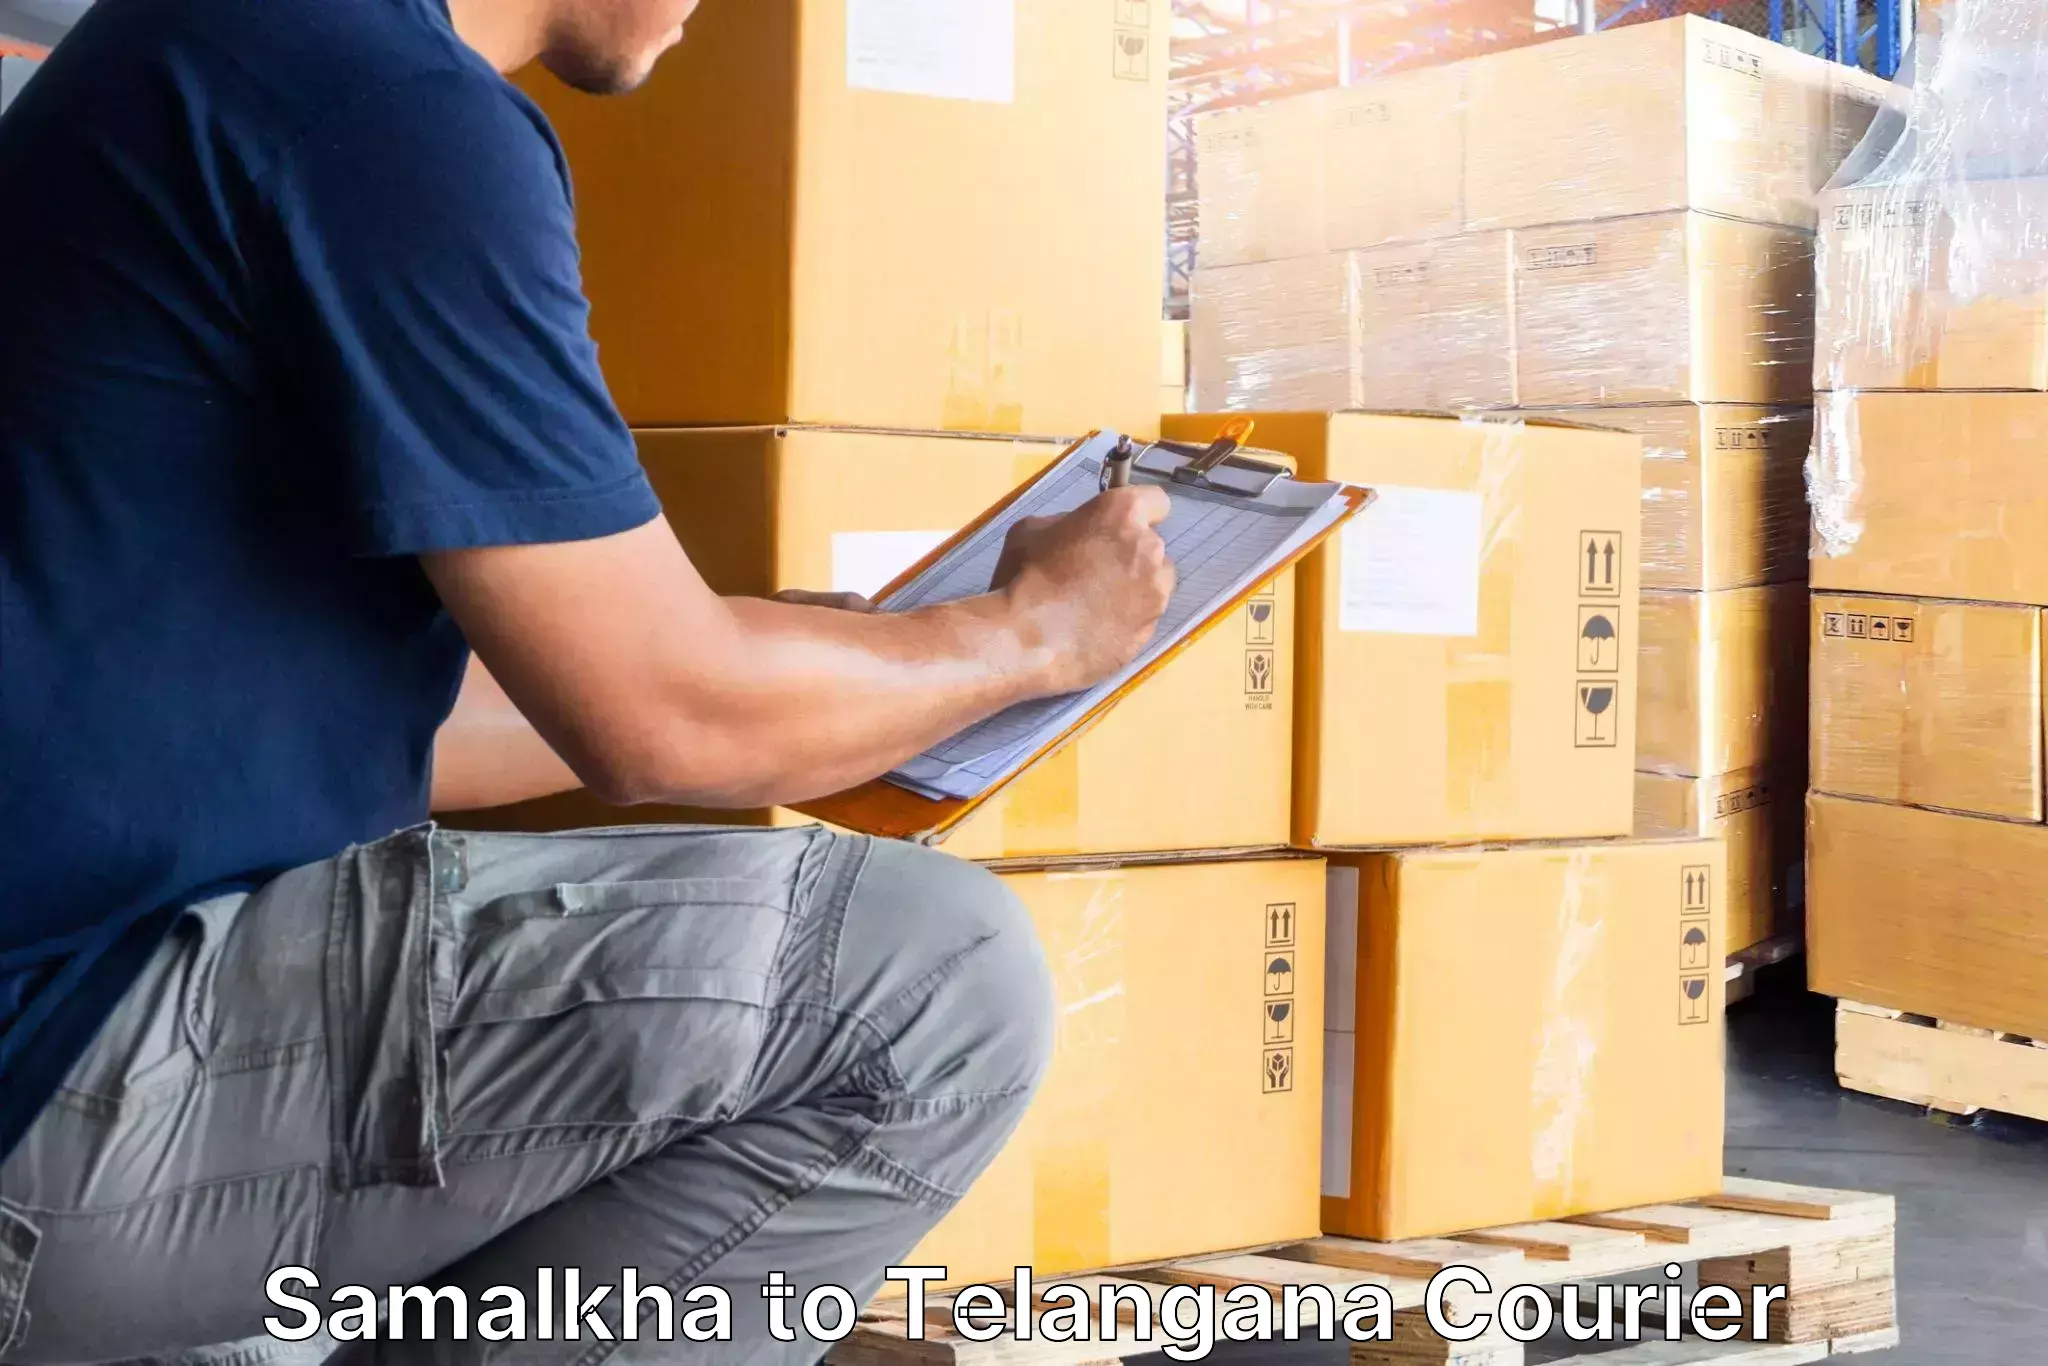 Seamless moving process Samalkha to Manuguru